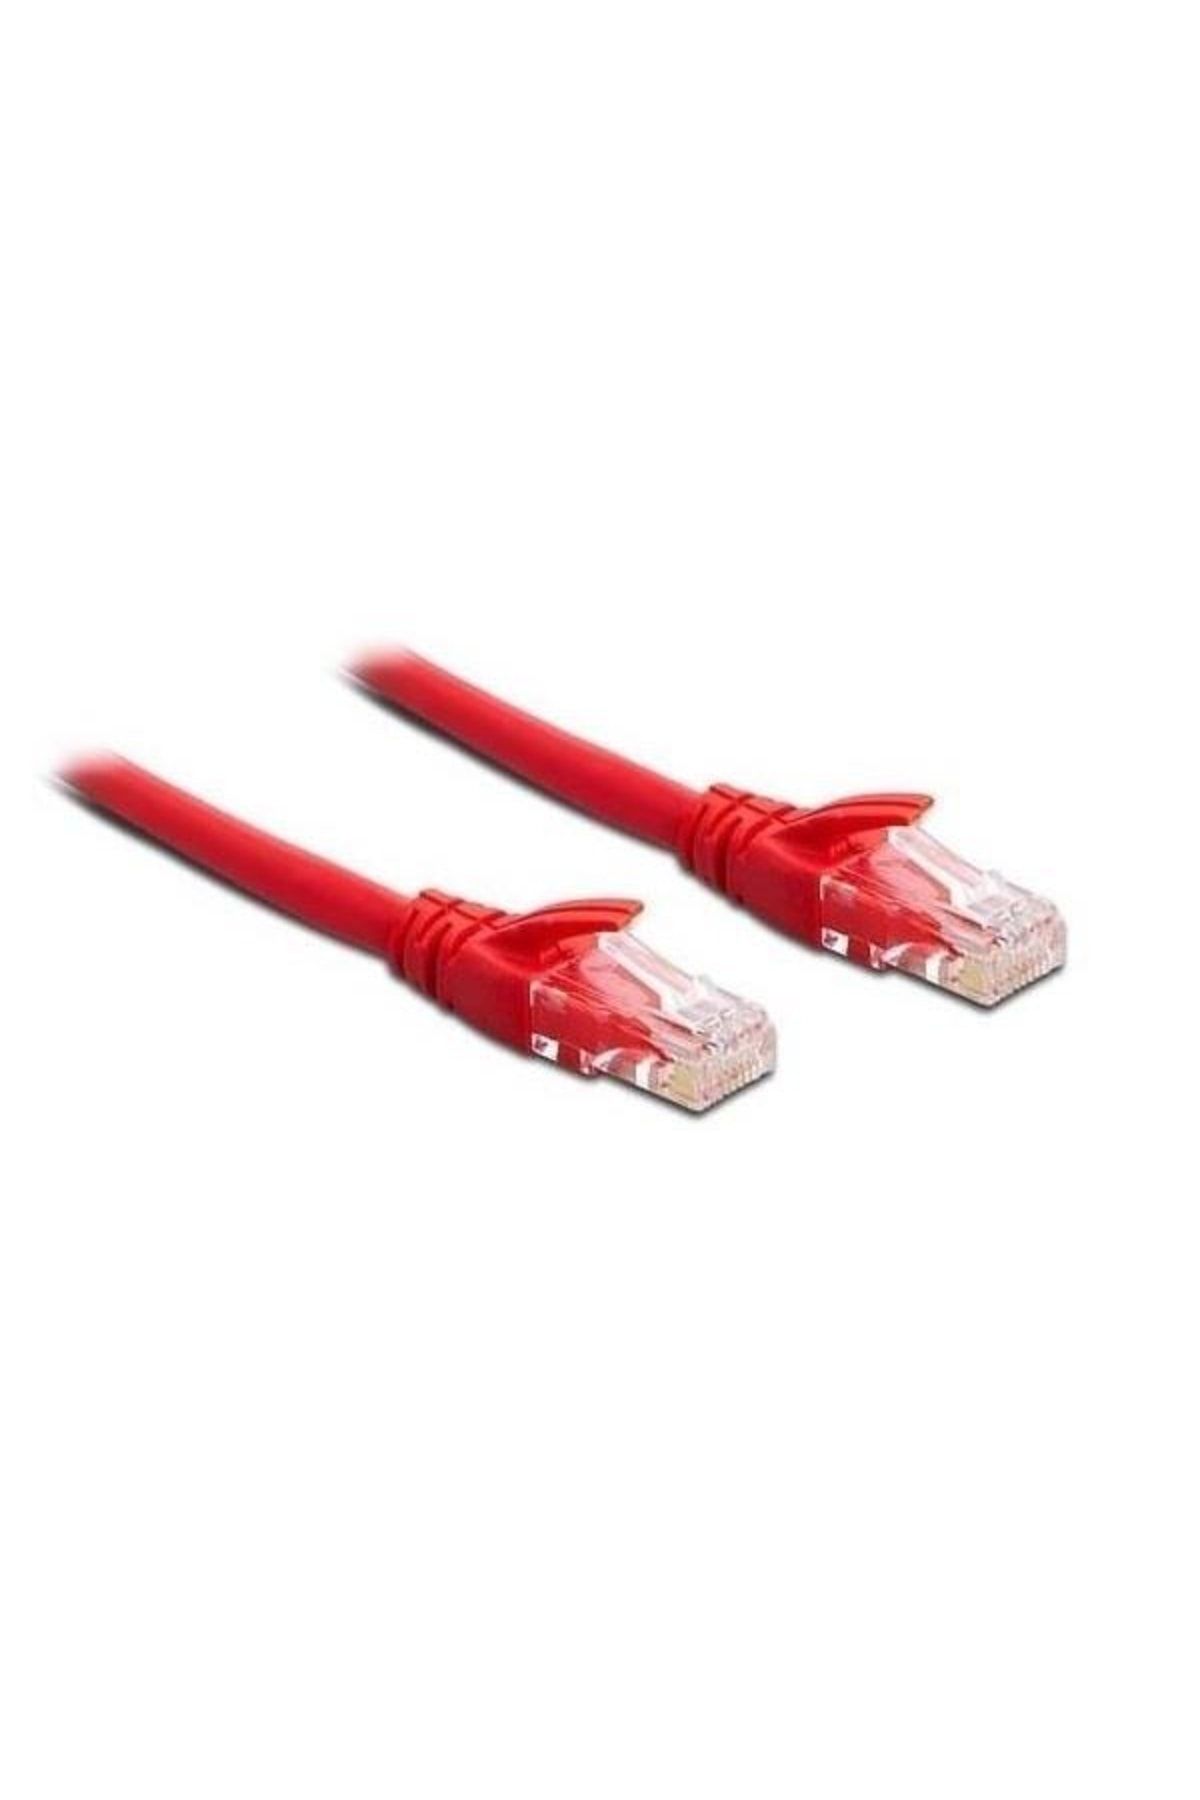 S-Link Sl-cat602 0,60m Kırmızı Cat6 Kablo